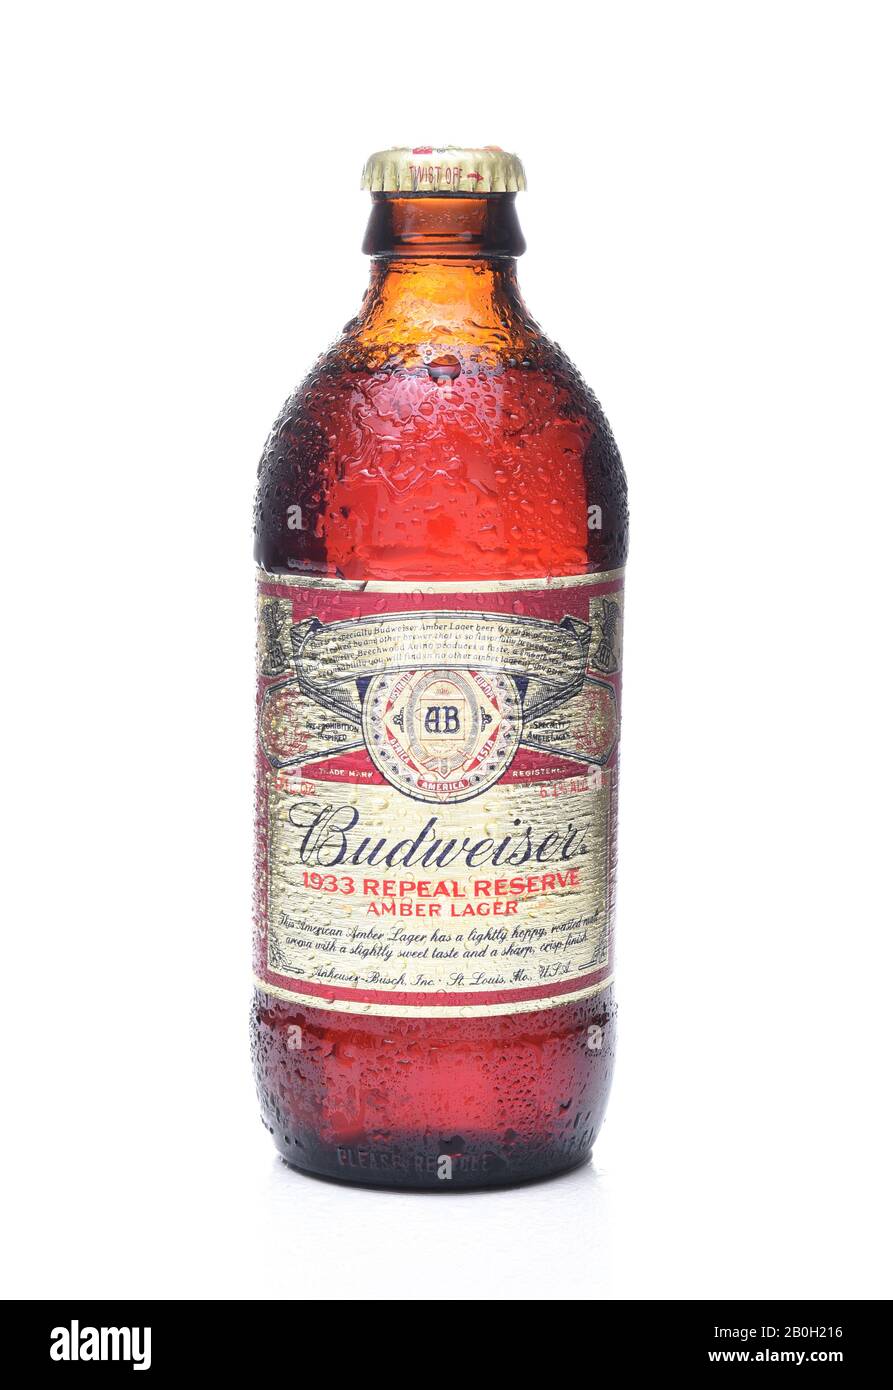 Irvine, CA - 7 NOVEMBRE 2017: Budweiser 1933 Repeal Reserve Amber Lager. Budweiser publie le recipie de l'époque de l'interdiction pour célébrer le représentant des actes Banque D'Images